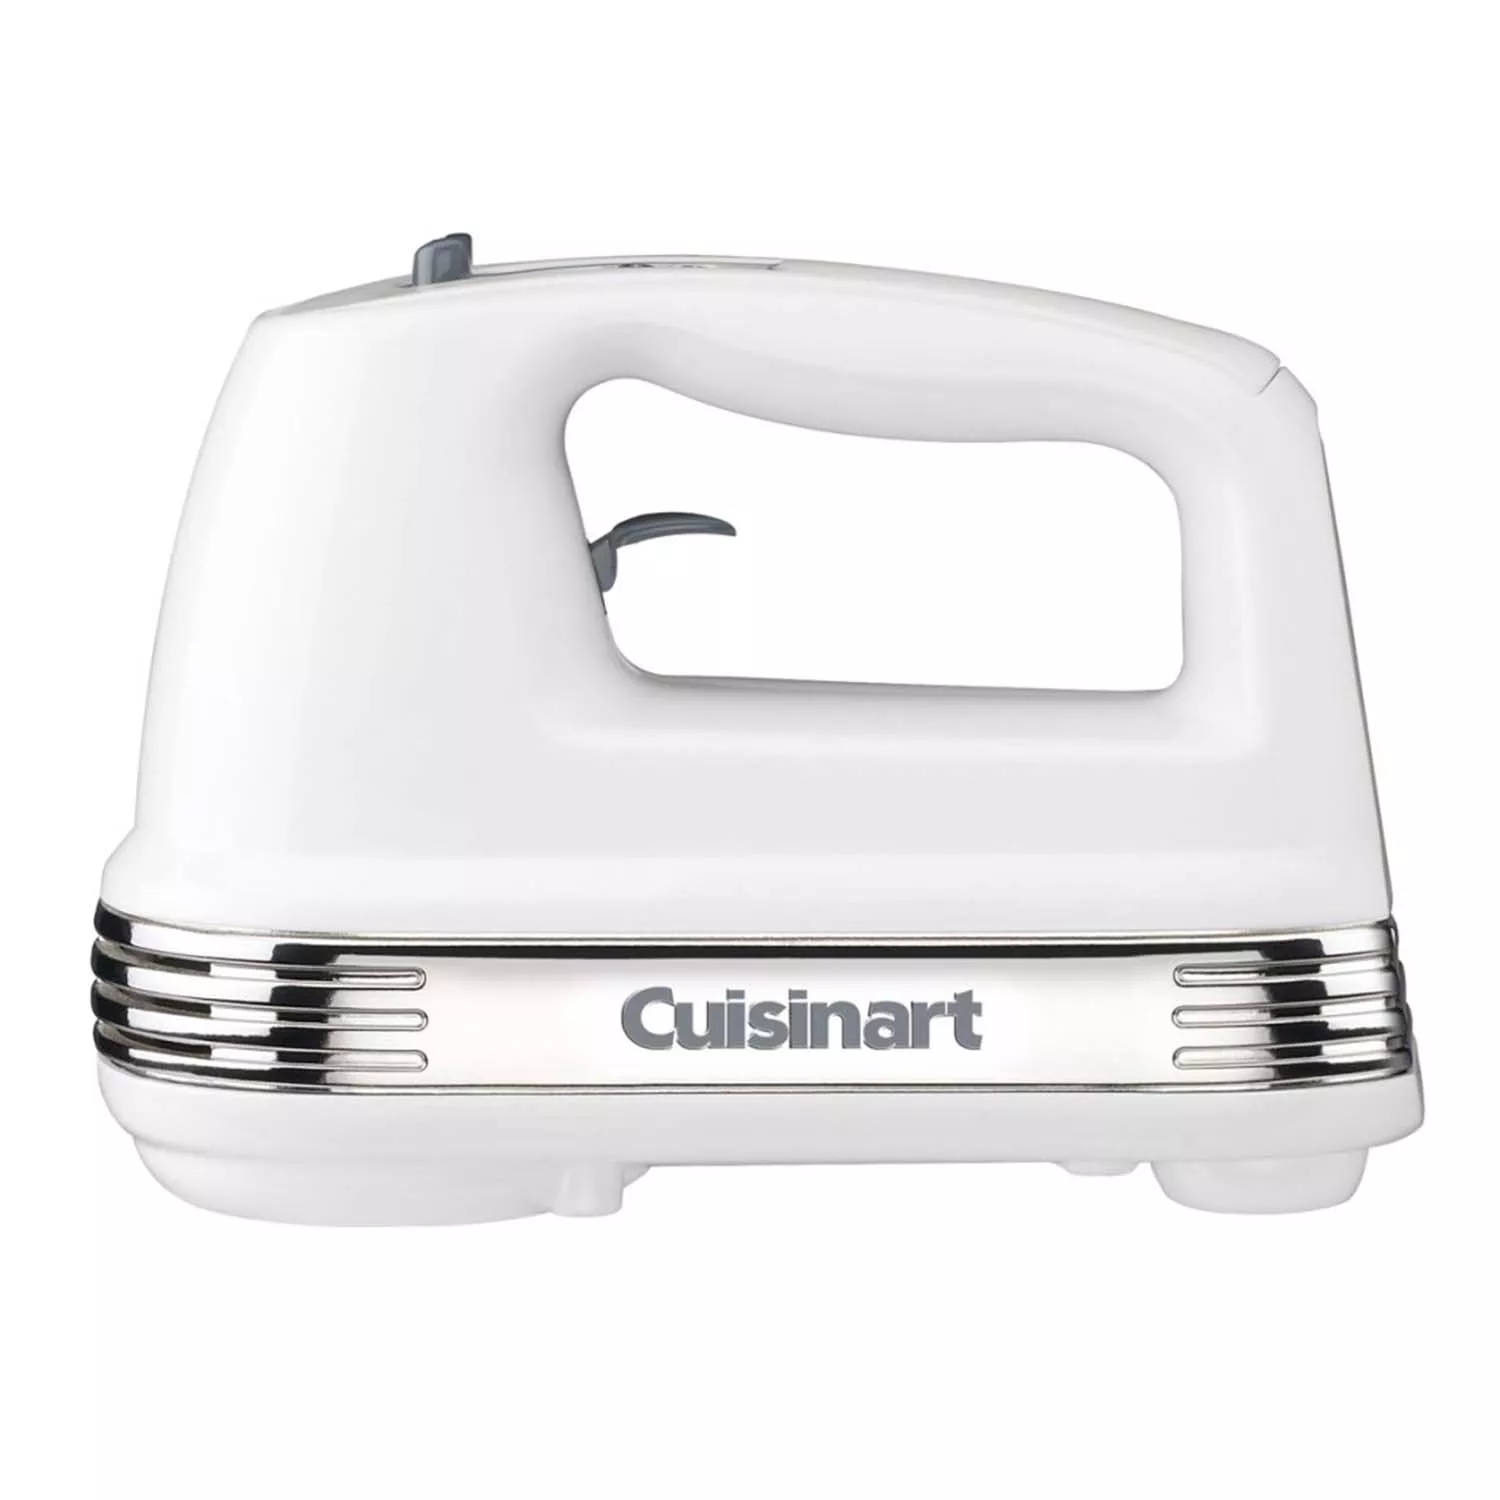 Cuisinart Power Advantage 3-Speed Hand Mixer